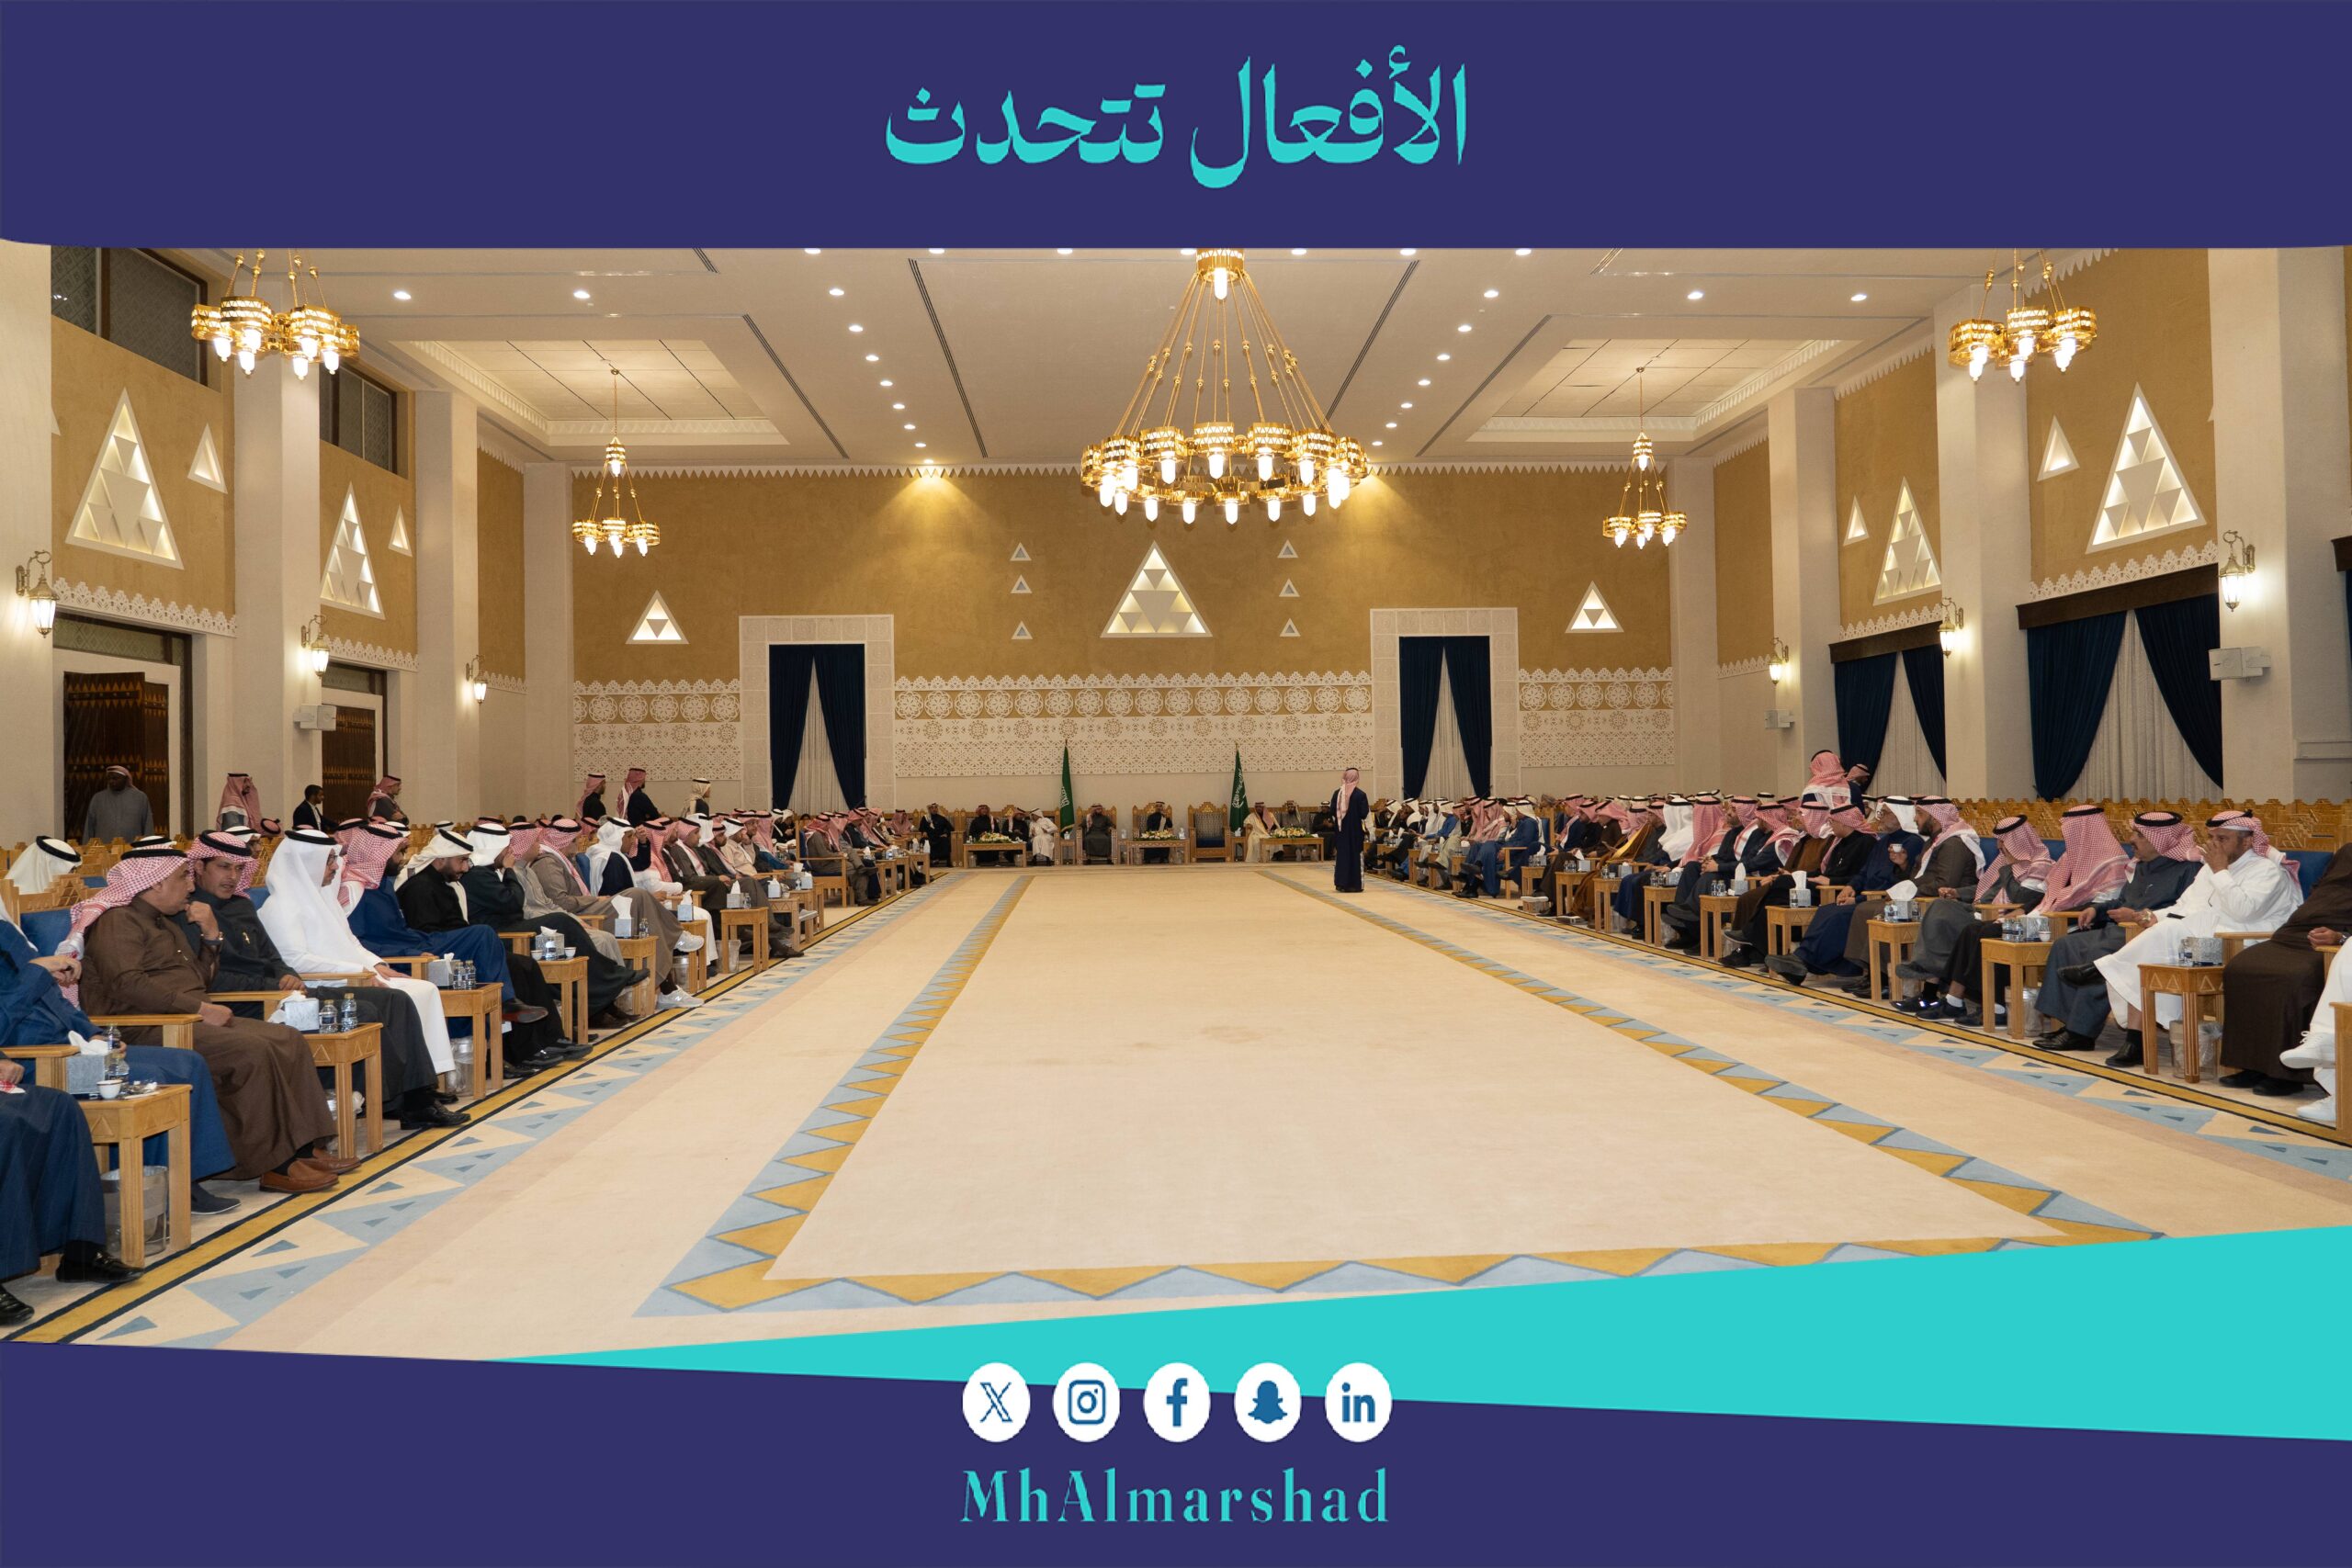 لقاء رؤساء وأعضاء لجان الغرفة بمناسبة قرب انتهاء أعمال مجلس الإدارة الثامن عشر بحضور أعضاء مجلس إدارة غرفة الرياض